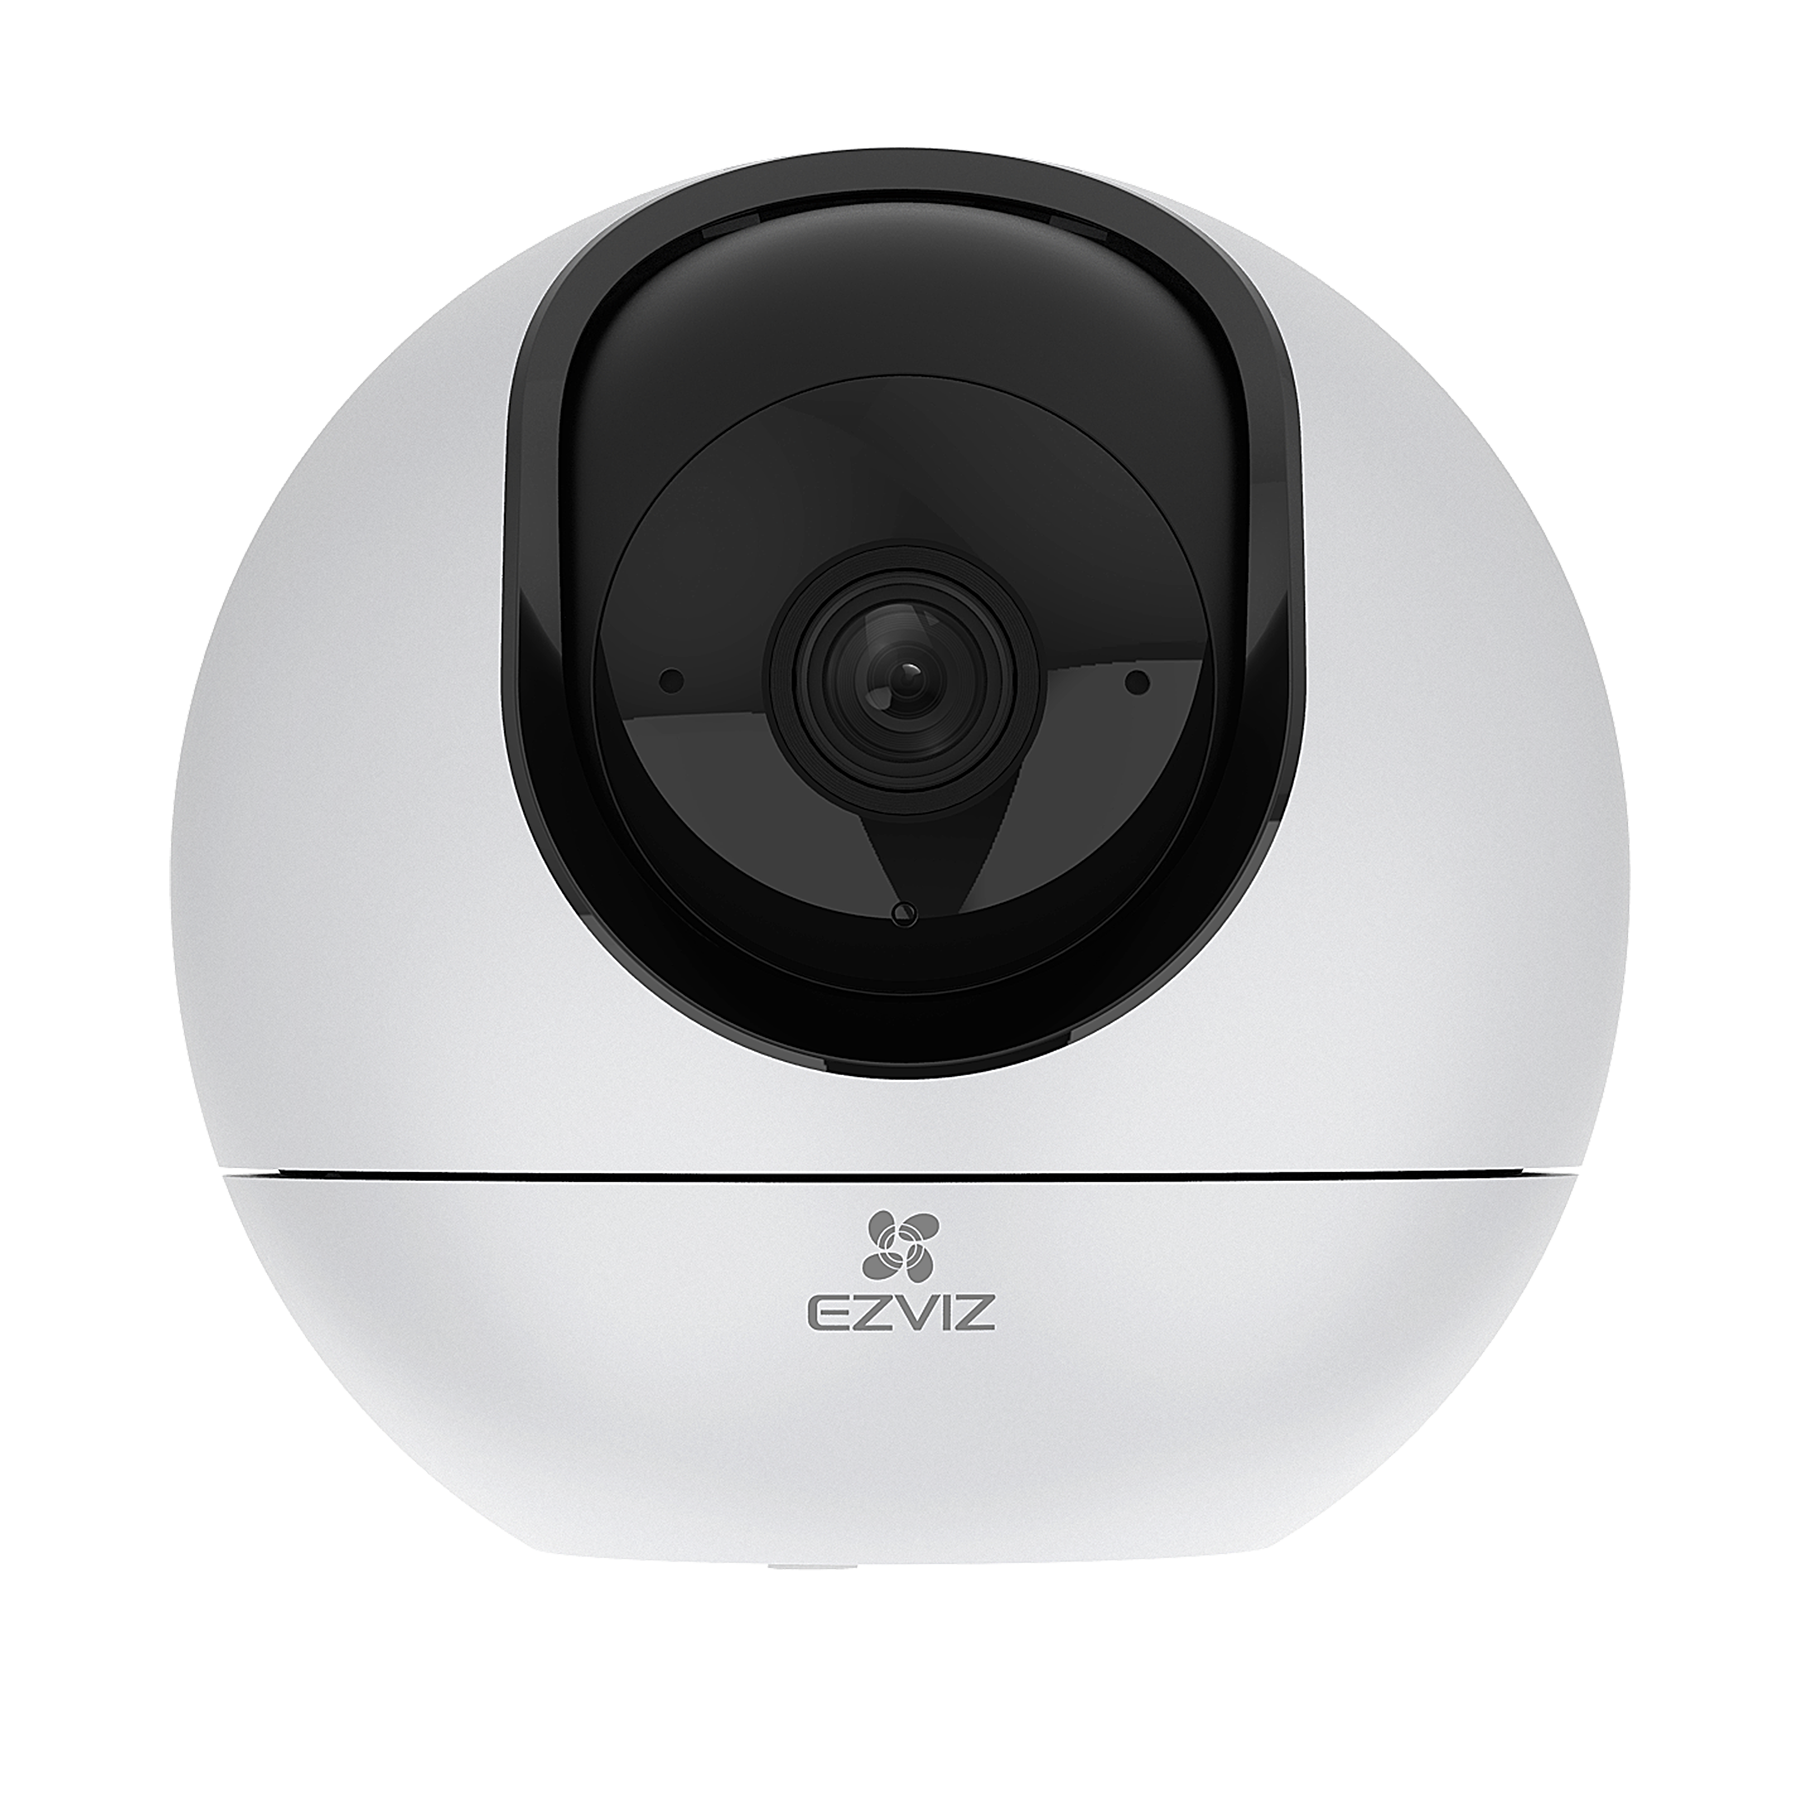 IP-камера EZVIZ C6 4 мм, настольная, 4Мпикс, CMOS, до 2560x1440, до 25 кадров/с, ИК подсветка 10м, WiFi, -10 °C/+45 °C, белый (CS-C6 (4MP,W2))